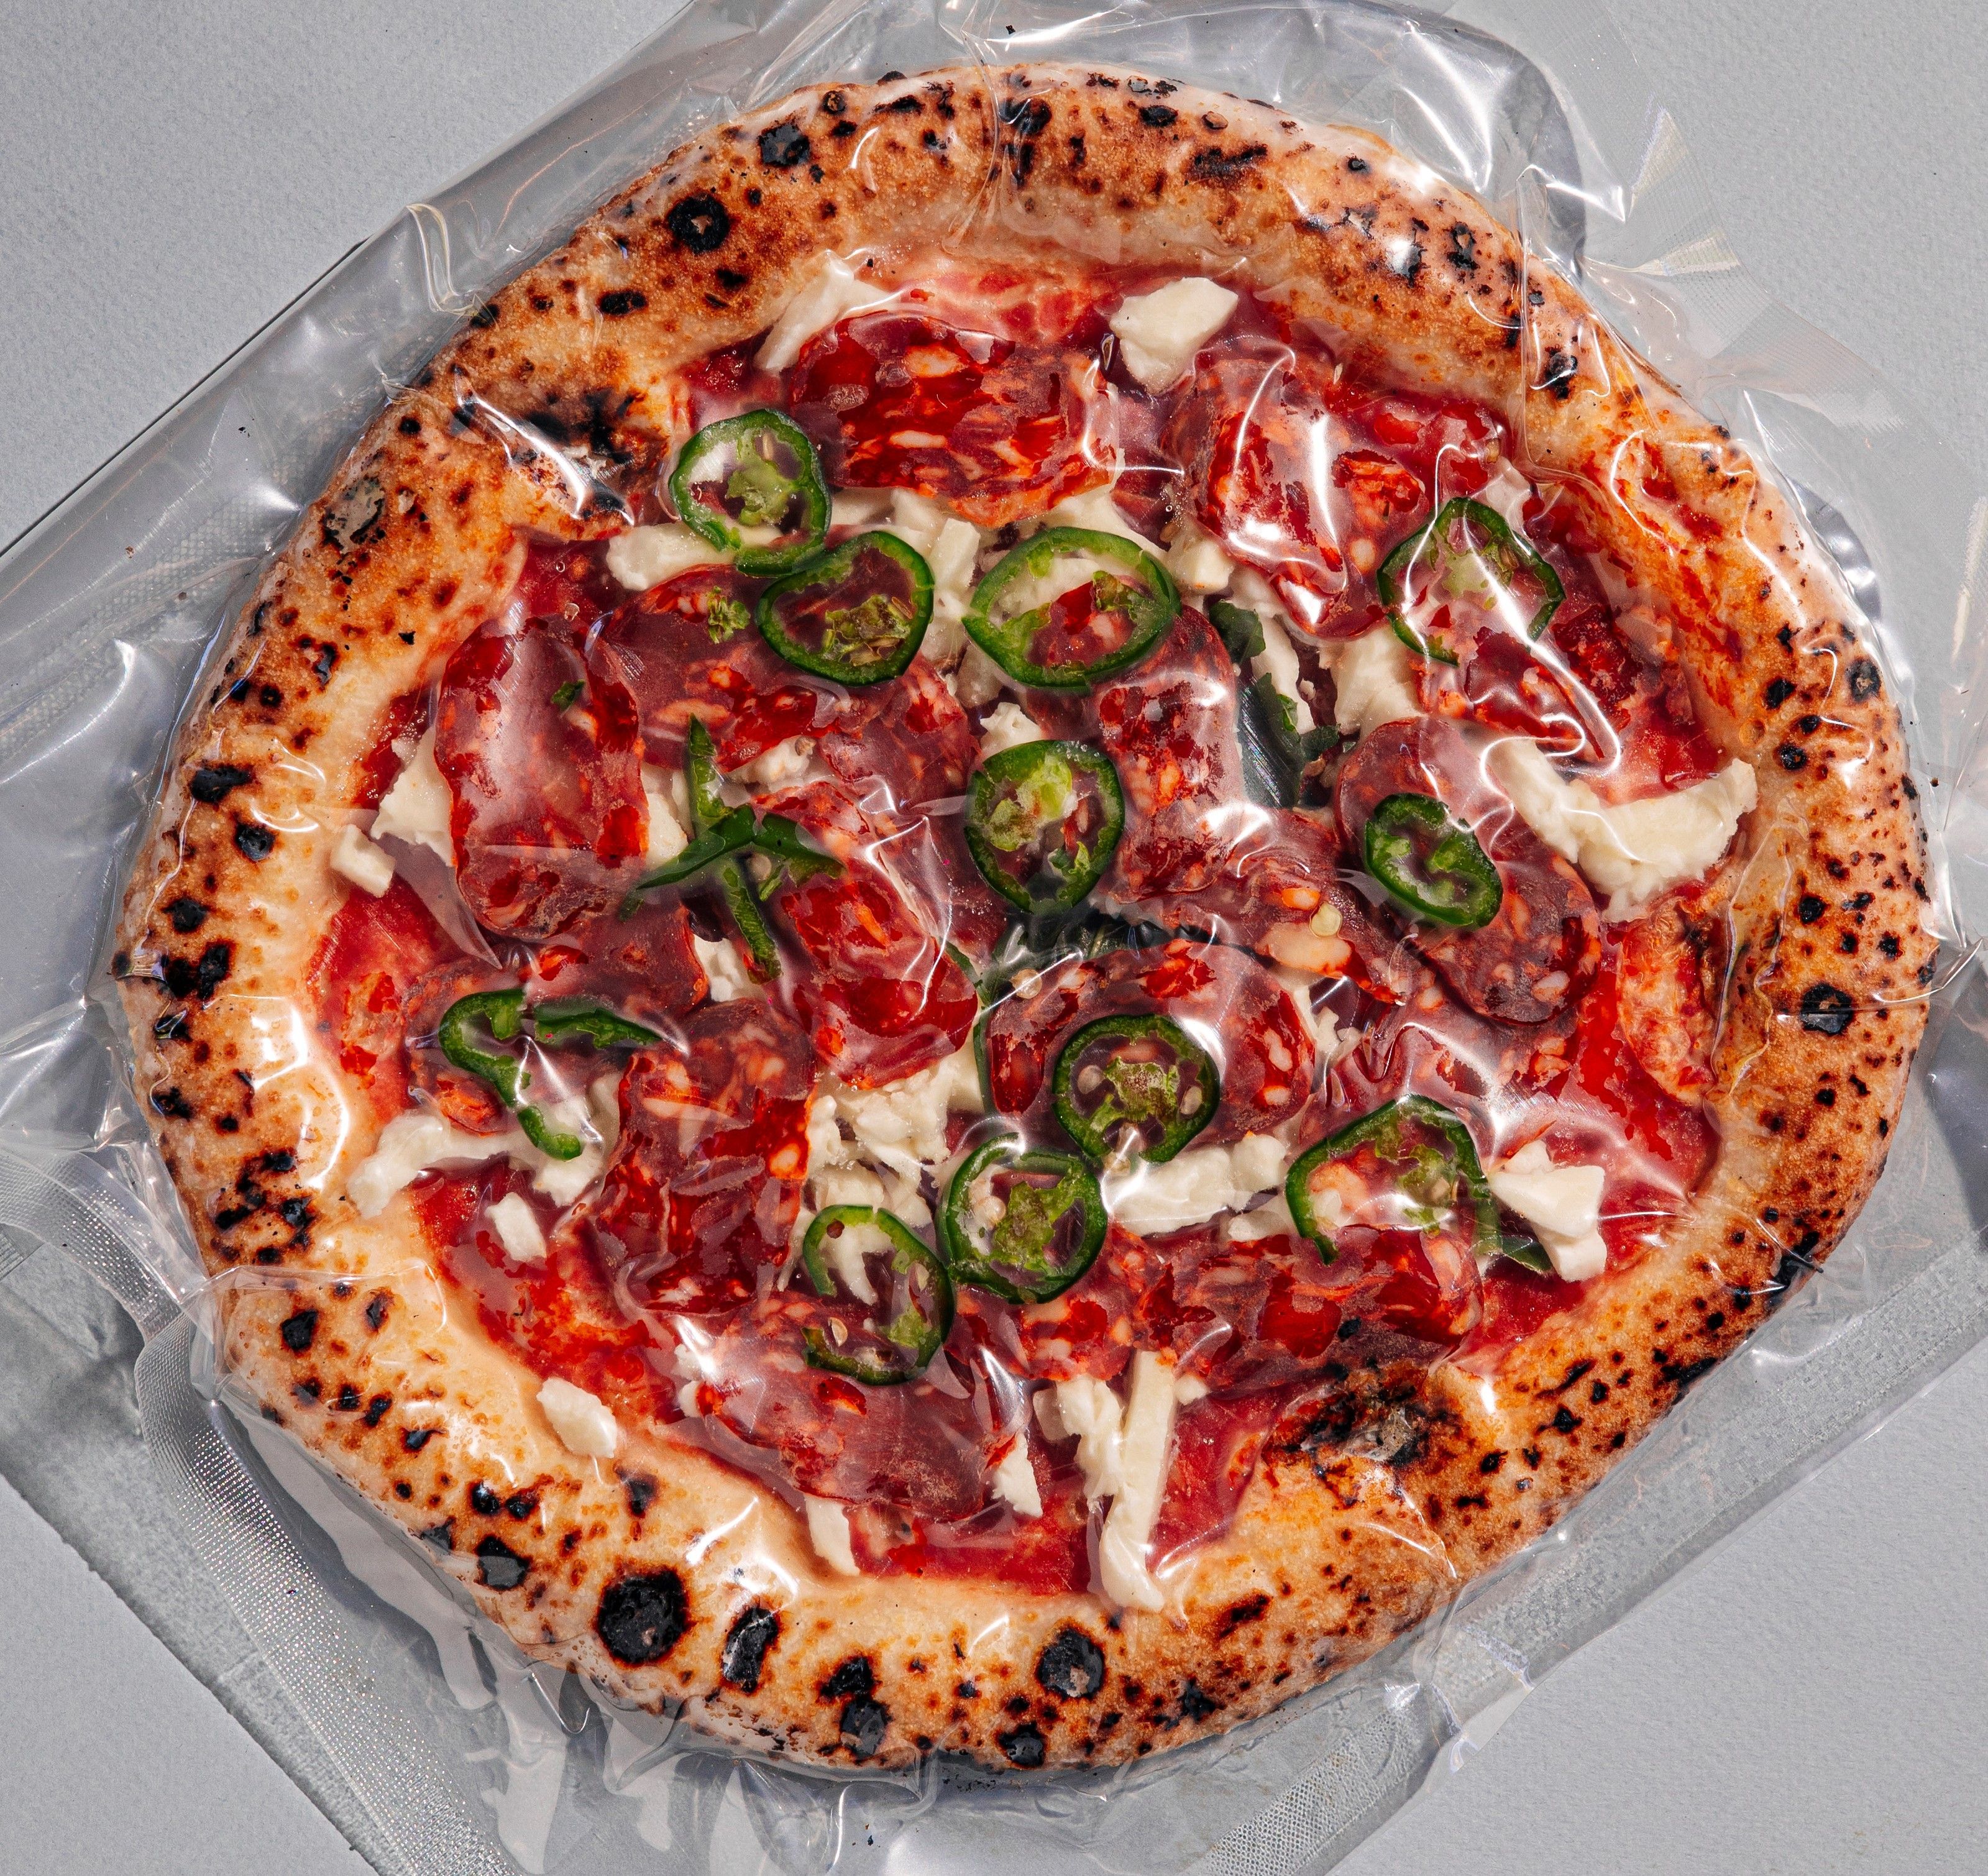 Пицца заморозка. Пицца 22 см пицца шоковой заморозки. Пицца на заморозку. Пицца замороженная полосатая сине-красная. Идеи продвижения замороженной пиццы.